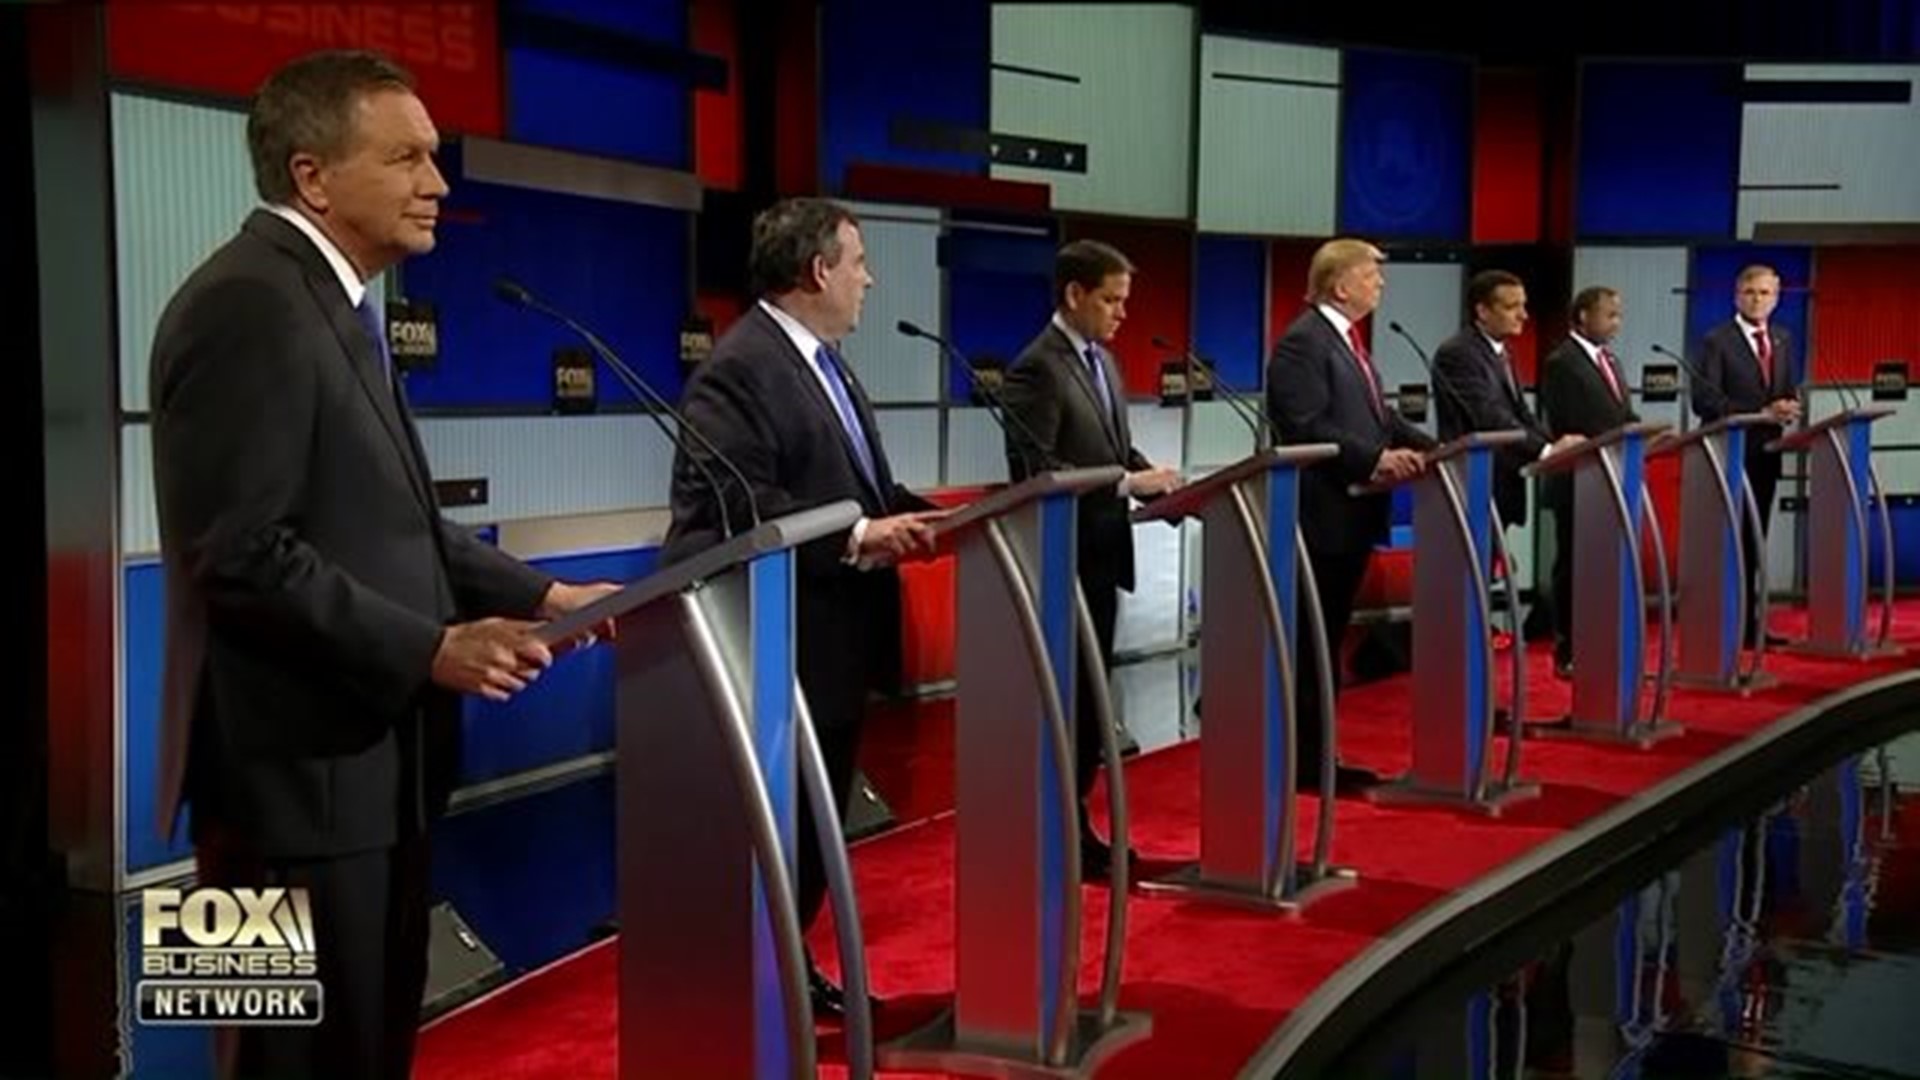 Republicans face off in last debate before primary season begins